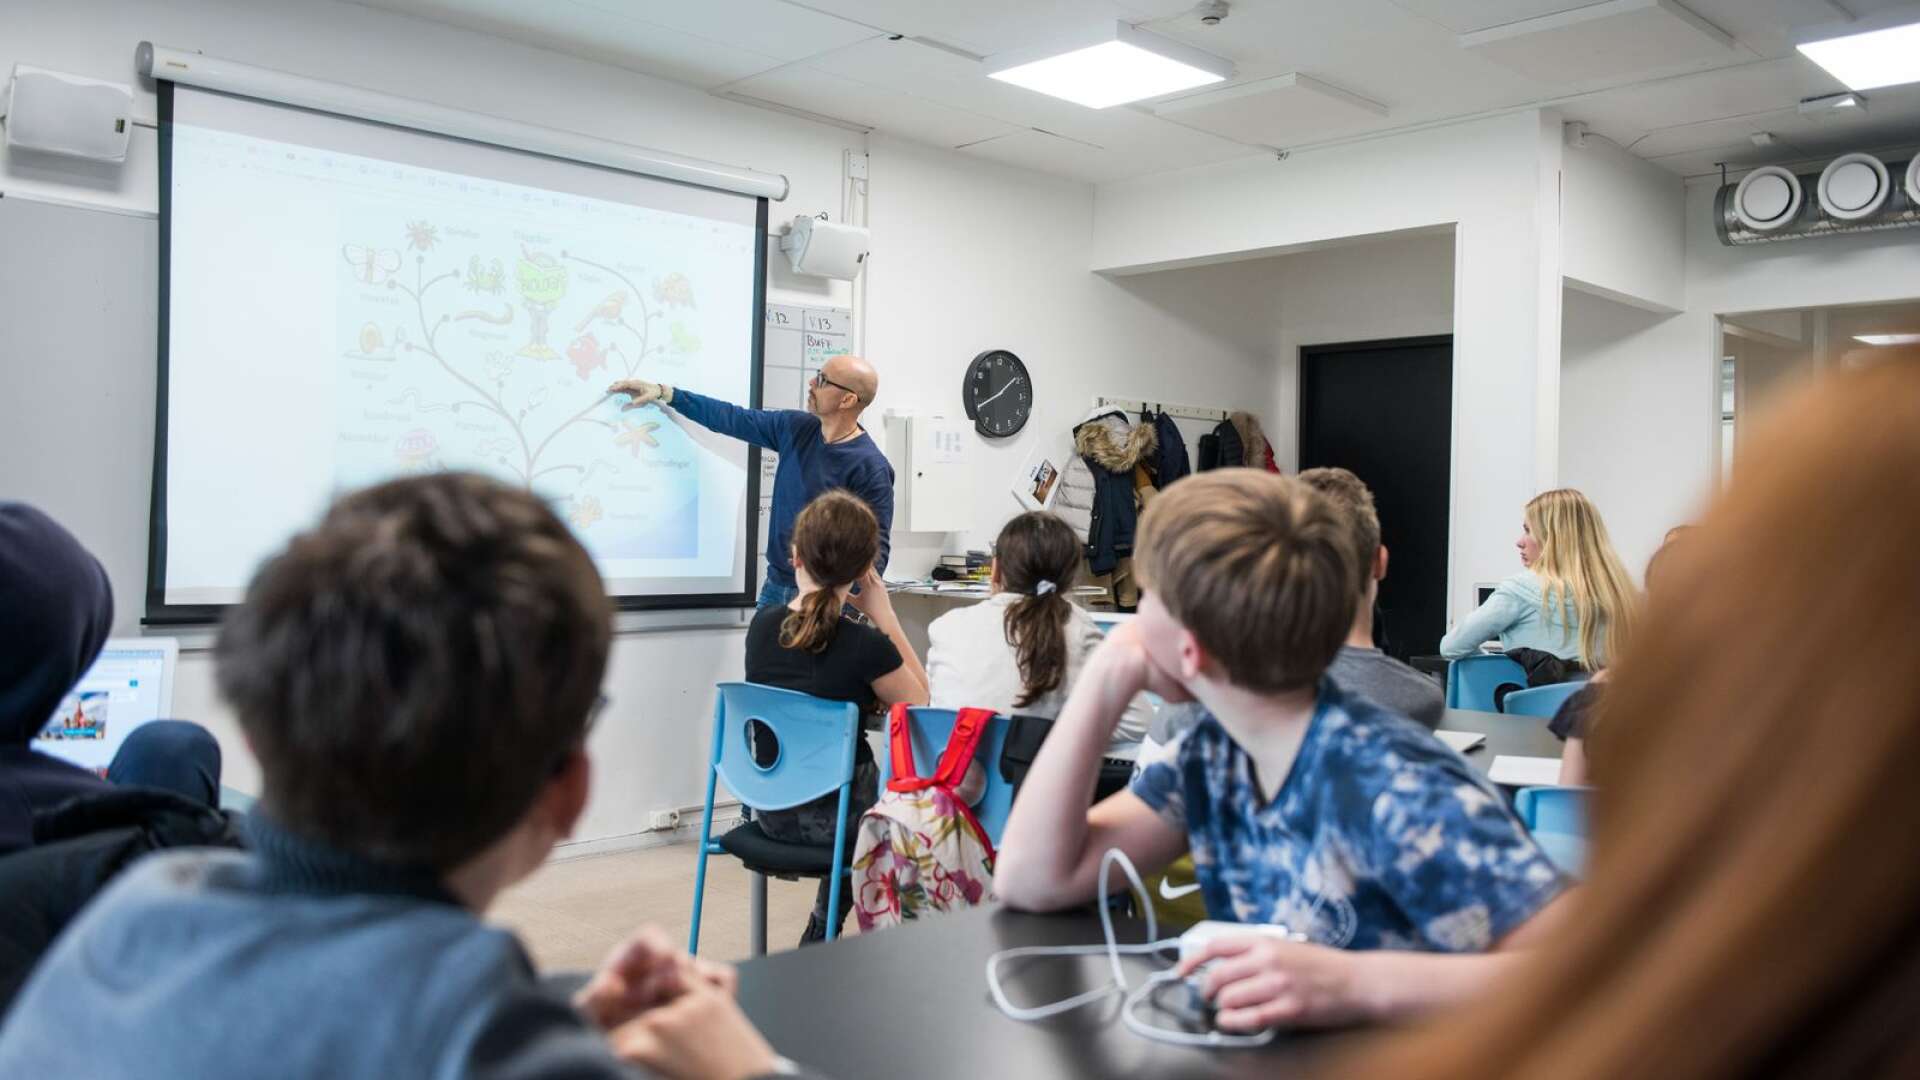 Rekryteringsbehovet av lärare motsvarar en tredjedel av lärarkåren i Värmland inom några år, enligt Lärarförbundet.